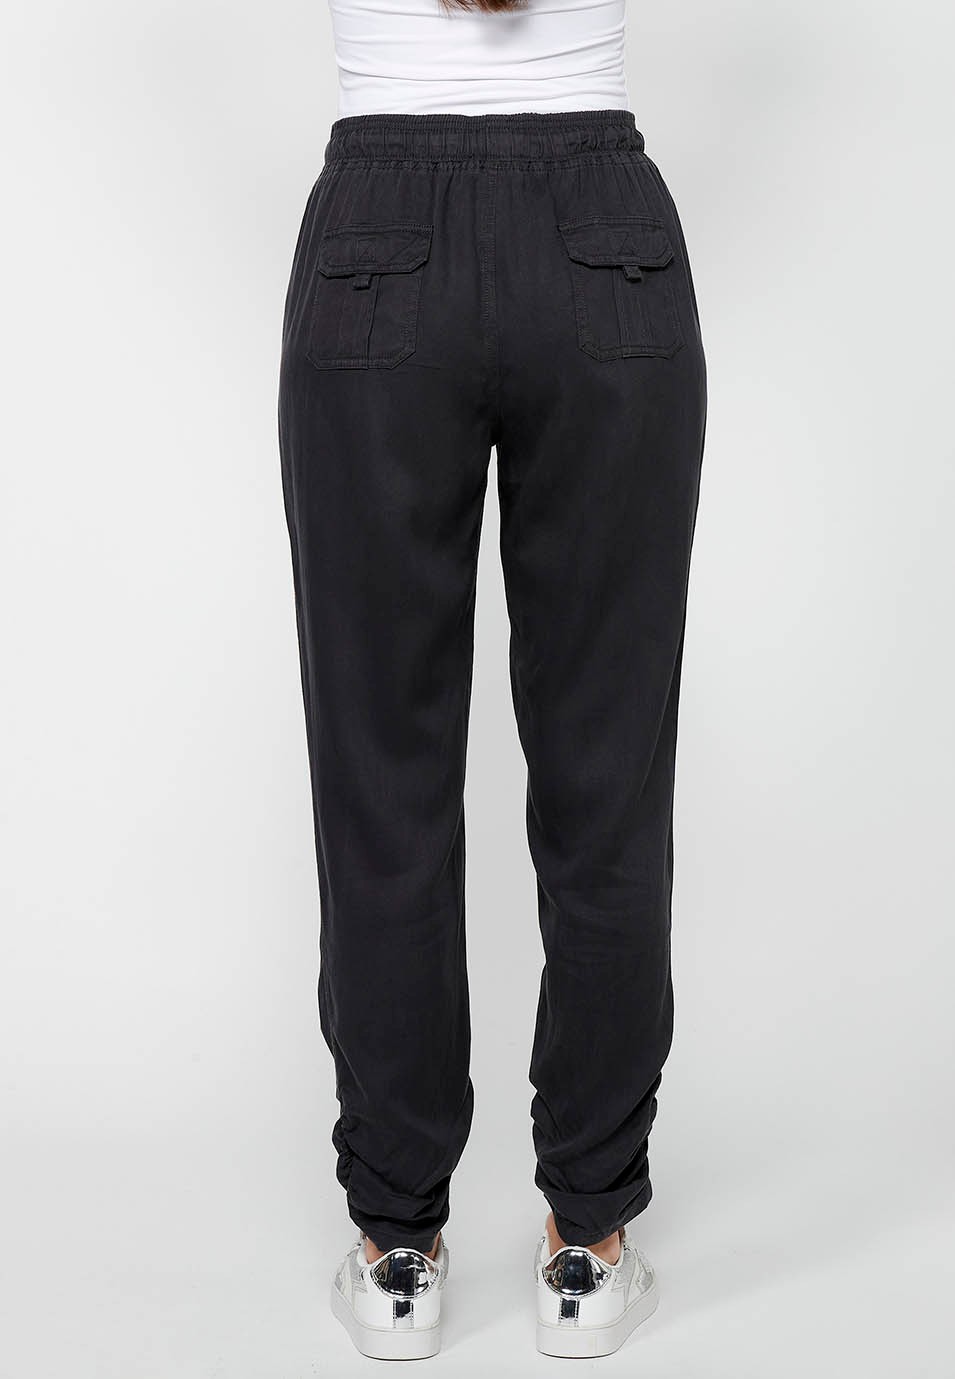 Pantalons llargs jogger amb Acabat arrissat i Cintura engomada amb Quatre butxaques, dos del darrere amb solapa de Color Negre per a Dona 6